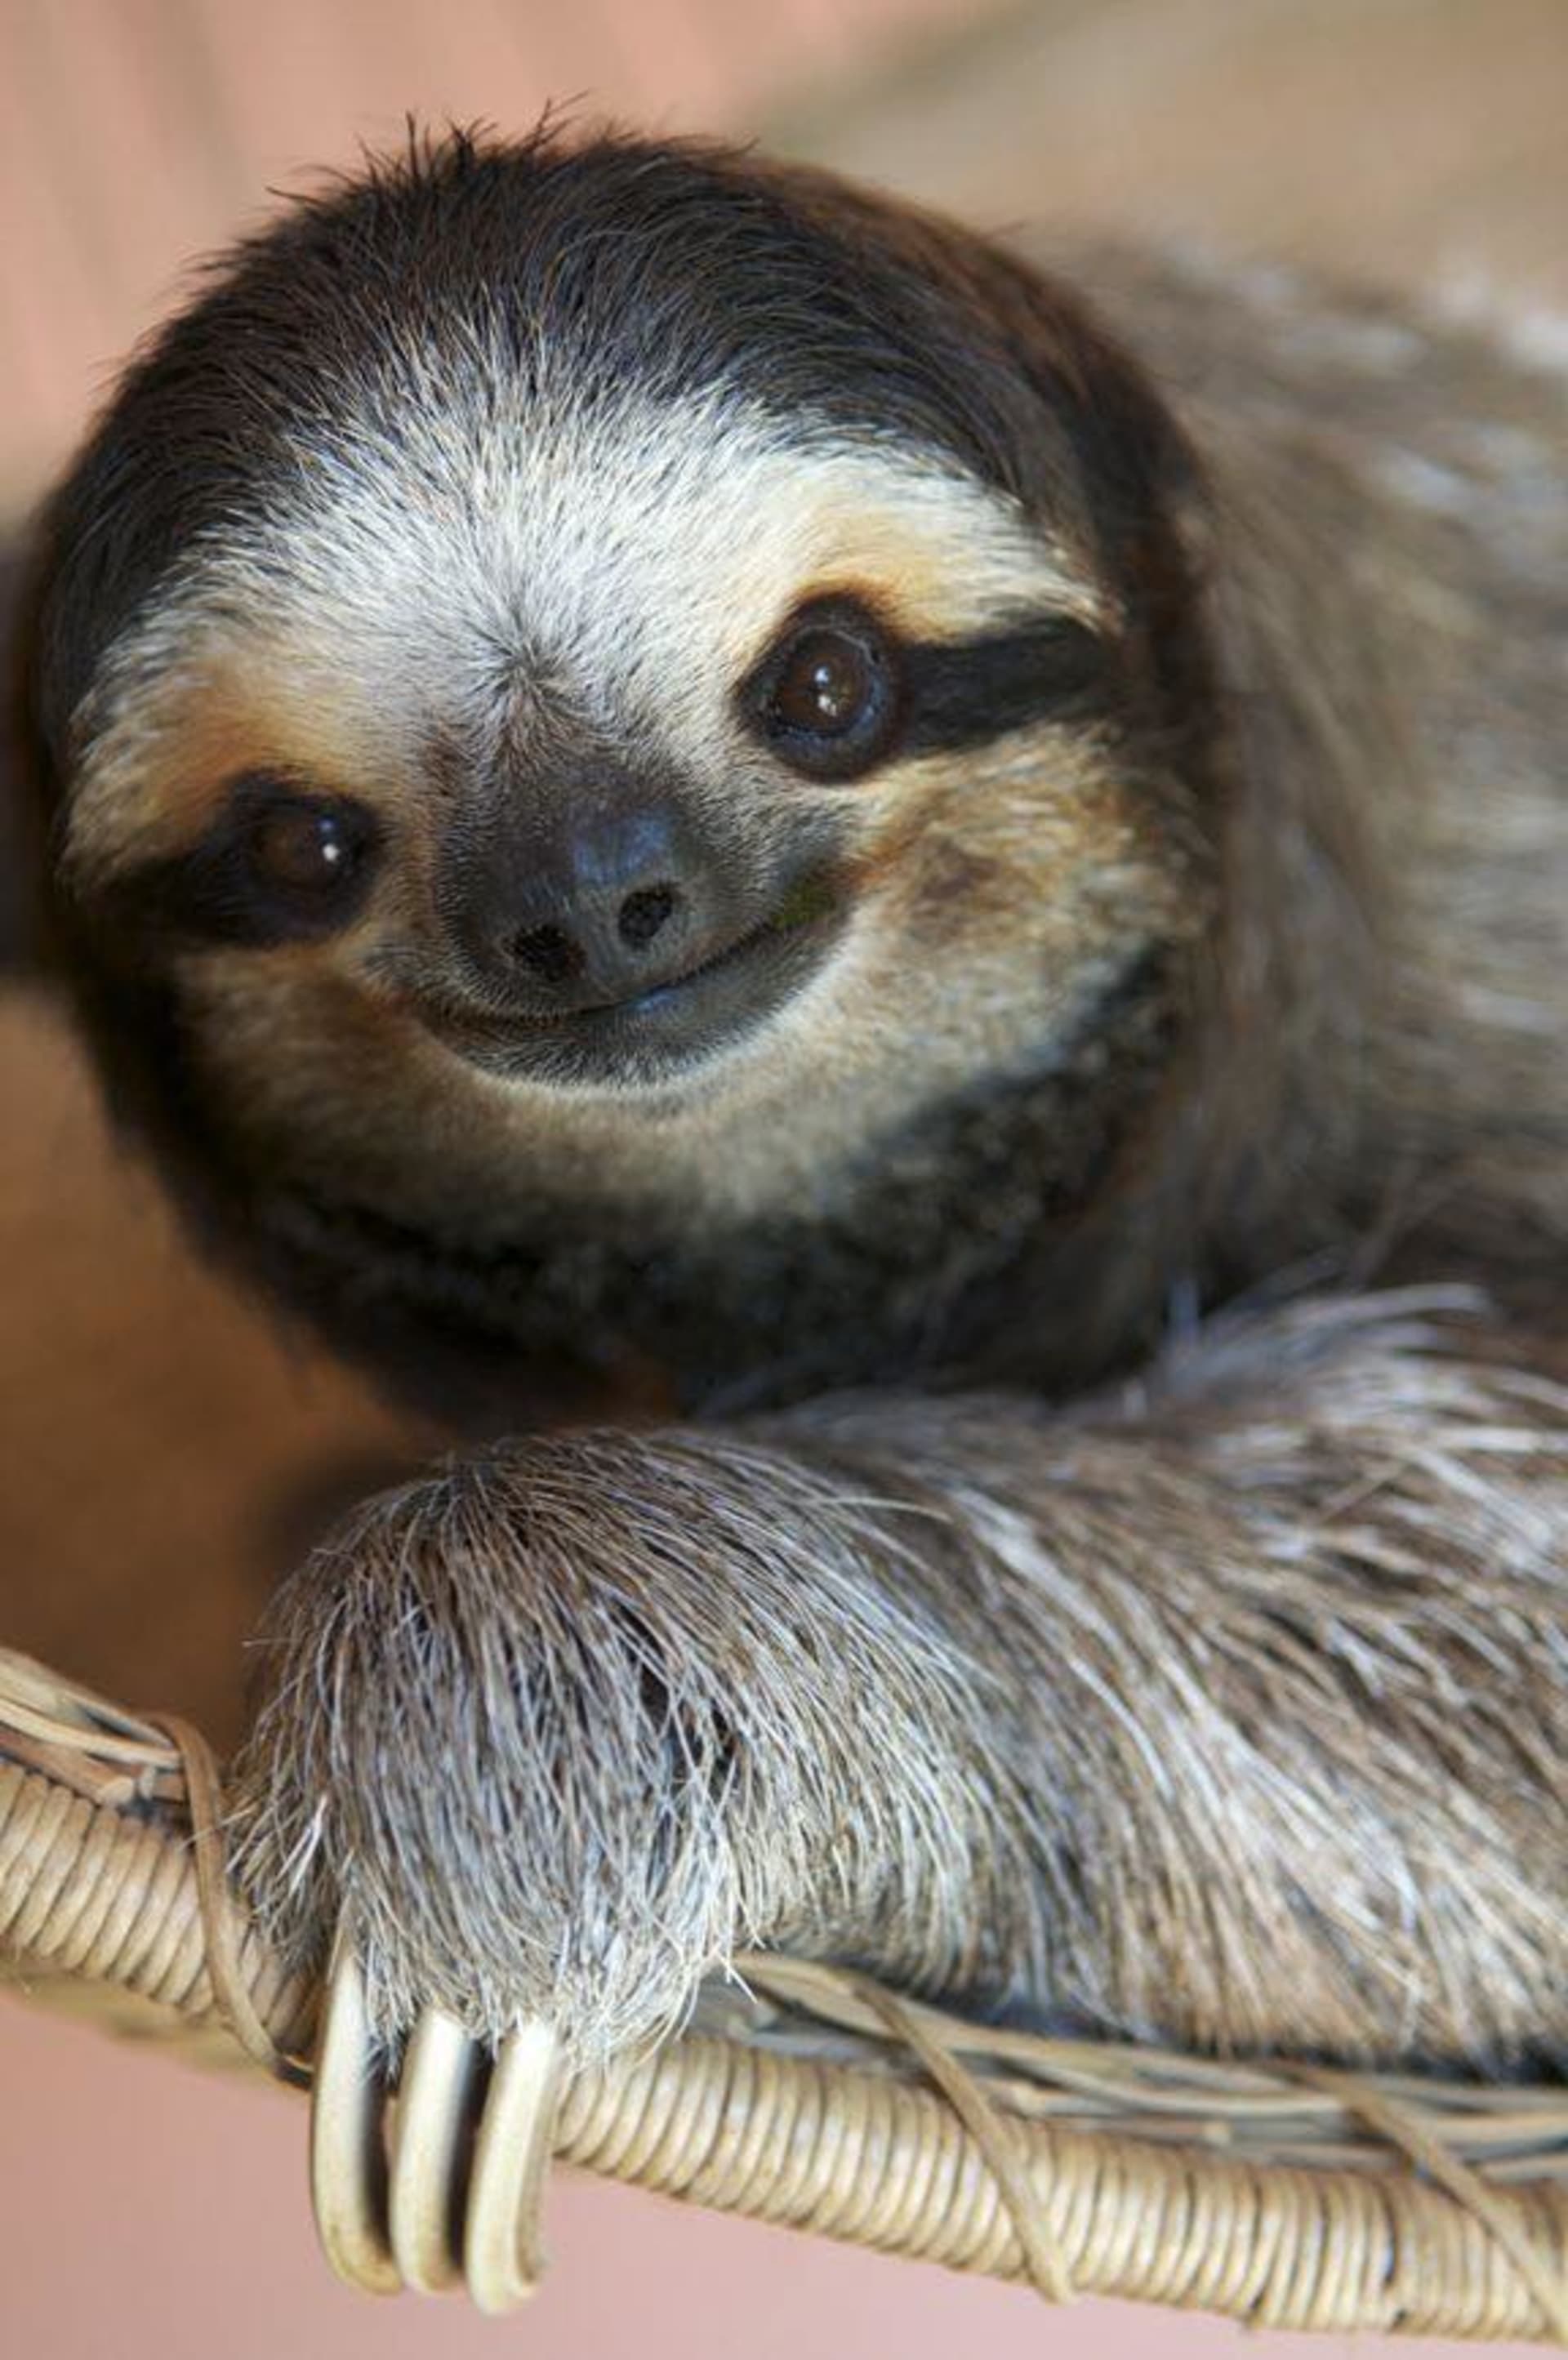 První obyvatelka azylu, Buttercup, se dožila 27 let. Zemřela loni. Zdroj: Sloth Sanctuary